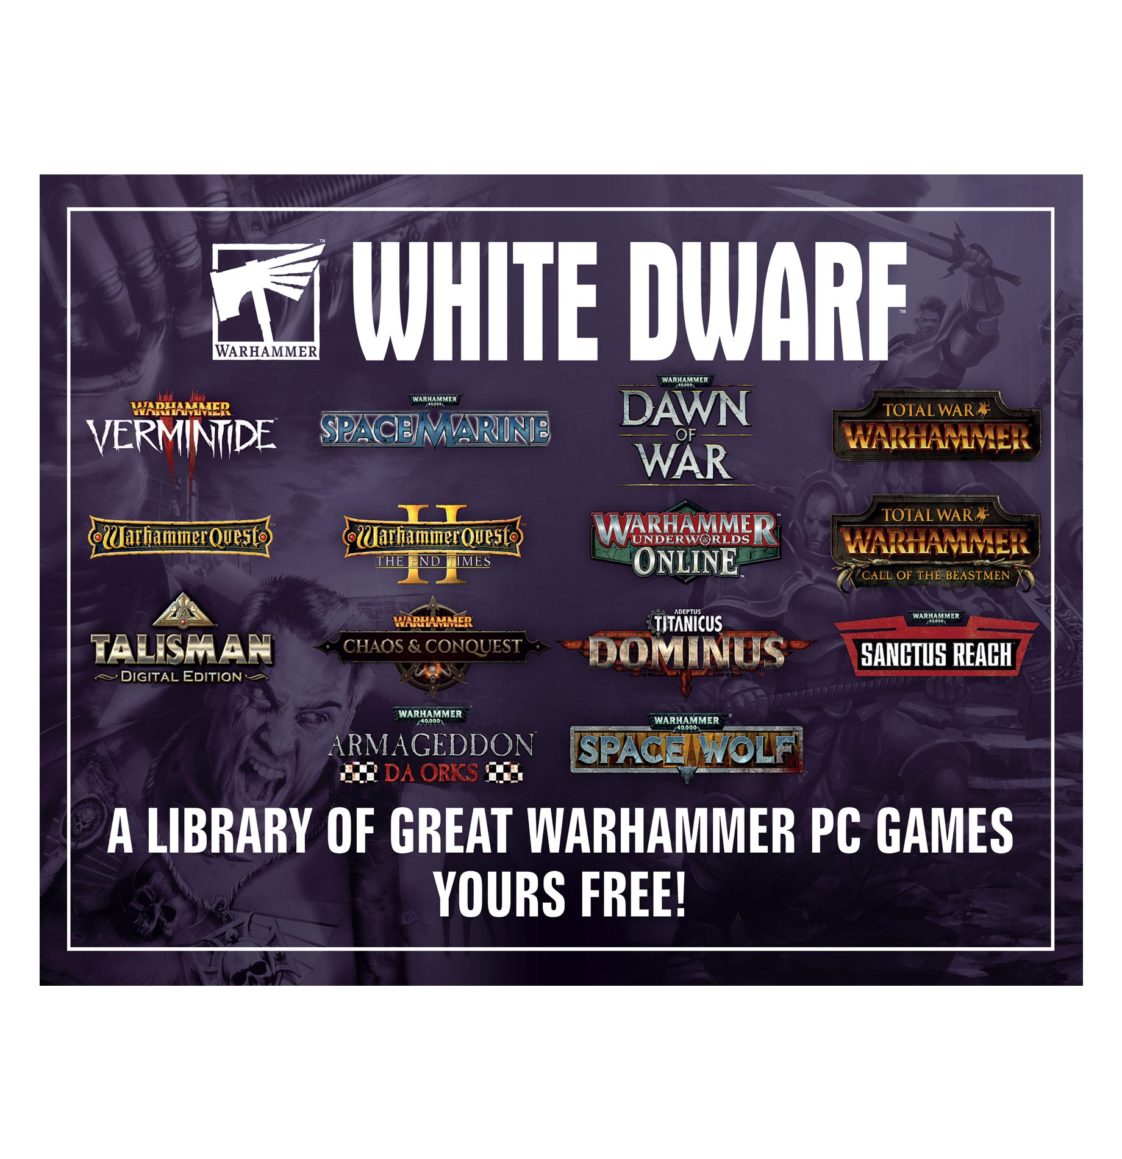 White Dwarf 462 (March 2021) (English) - Free PC Games